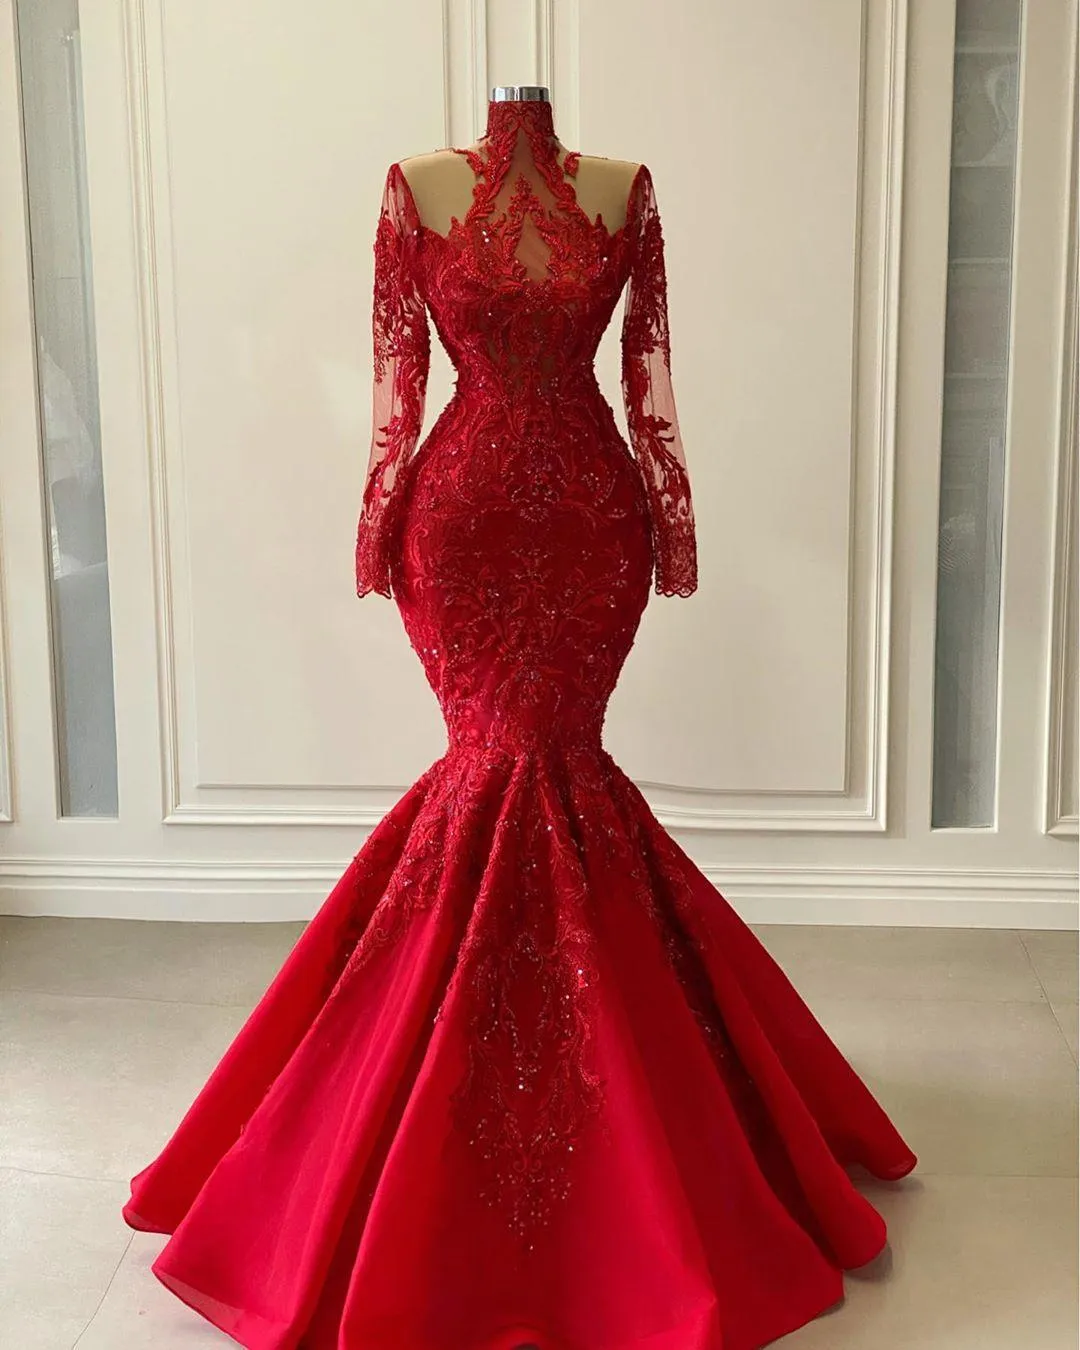 2021 Seksi Arapça ASO EBI Kırmızı Lüks Dantel Kristal Boncuklu Gelinlik Modelleri Parlak Uzun Kollu Yüksek Boyun Illusion Mermaid Abiye giyim Vestidos